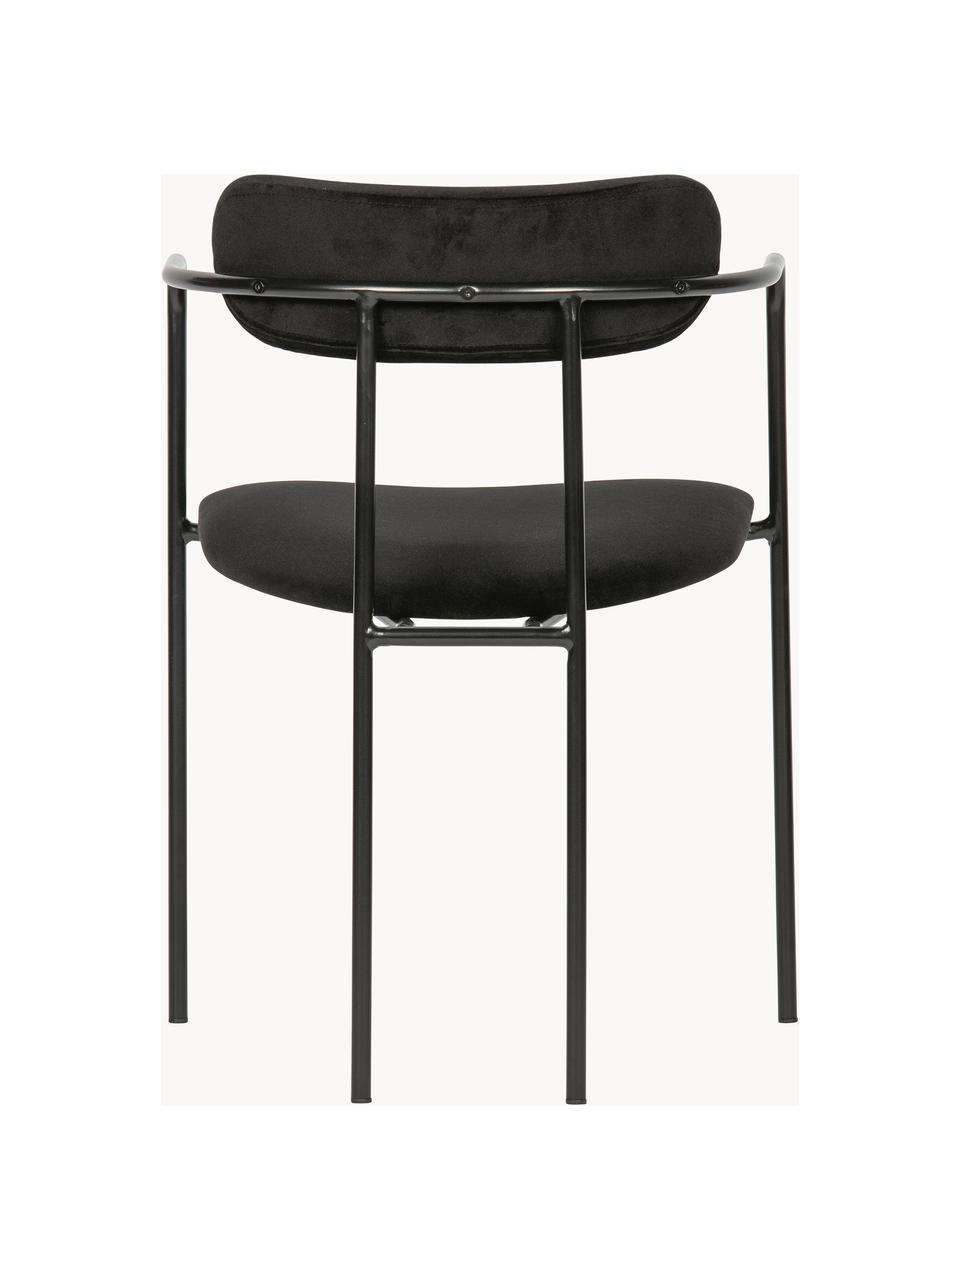 Krzesło z podłokietnikami z aksamitu Elvy, Tapicerka: 100% aksamit poliestrowy, Stelaż: metal powlekany, Czarny aksamit, S 52 x G 50 cm